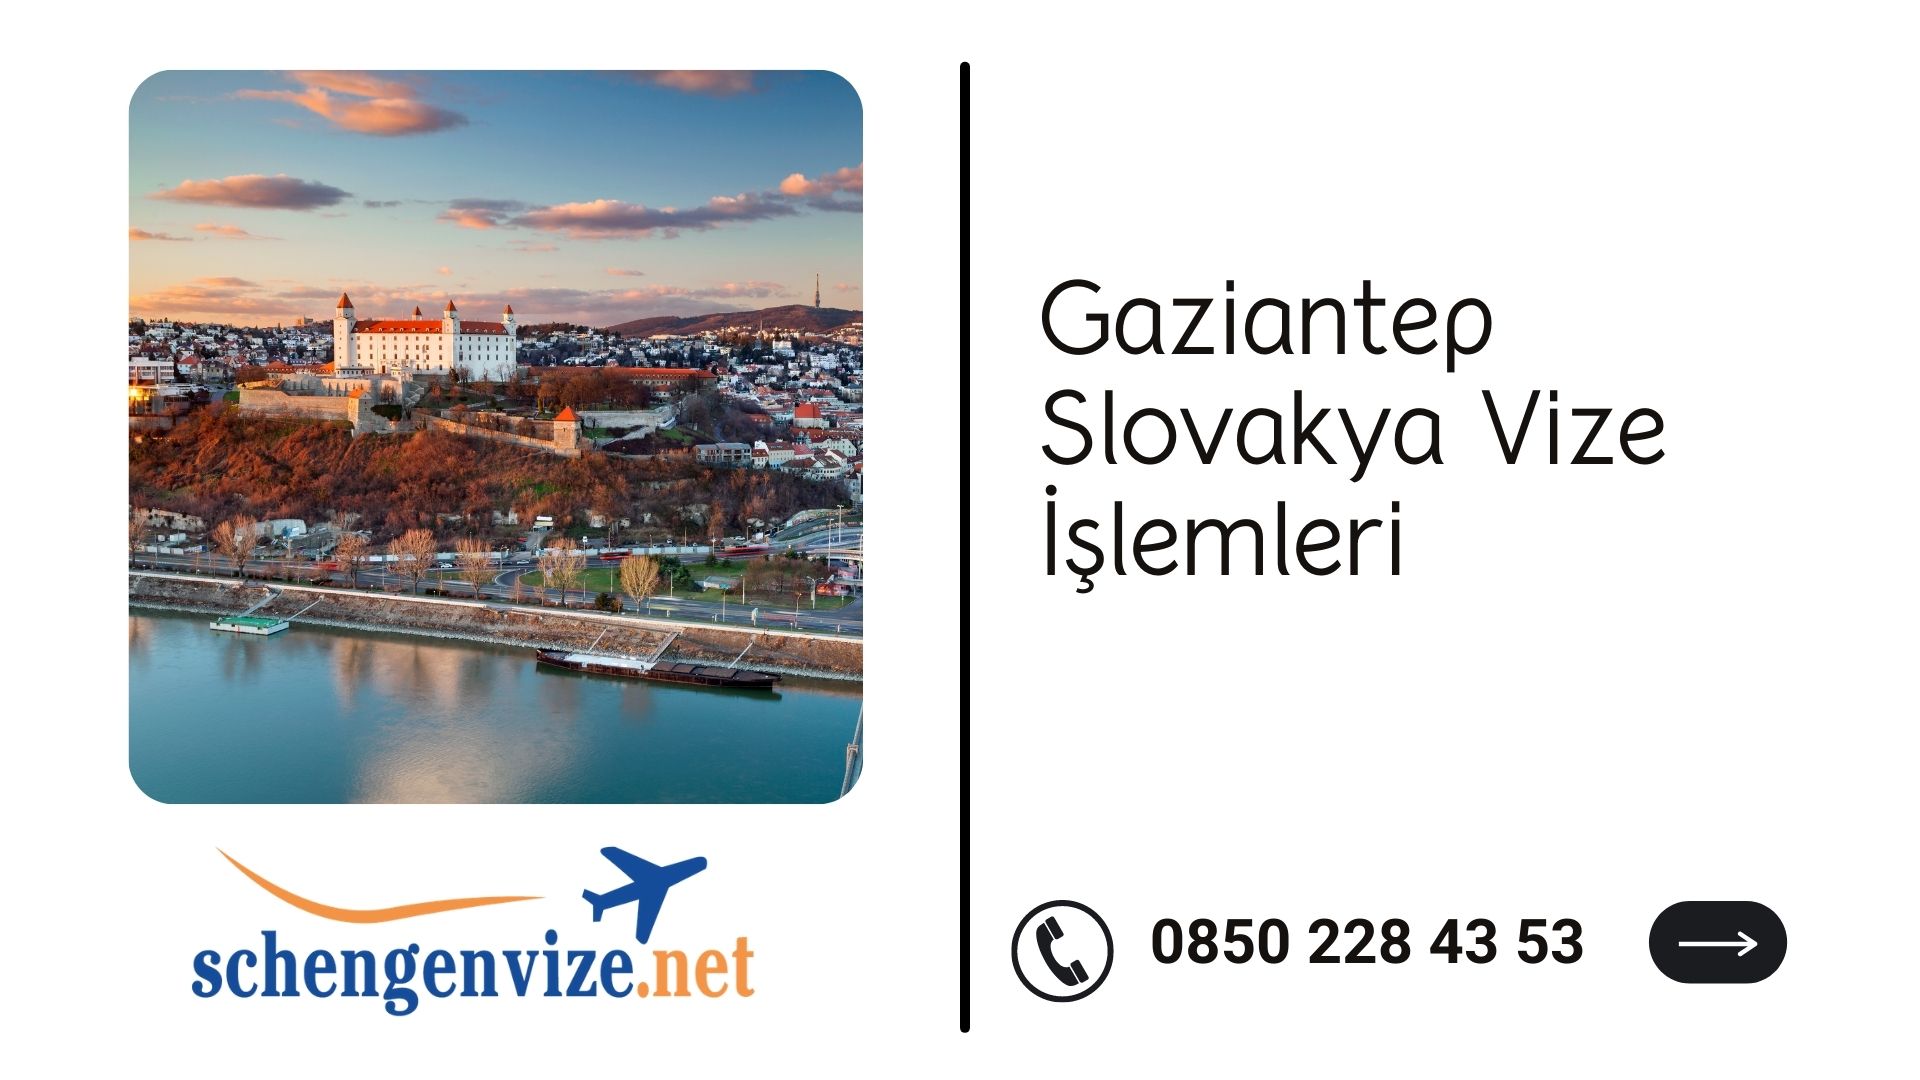 Gaziantep Slovakya Vize İşlemleri